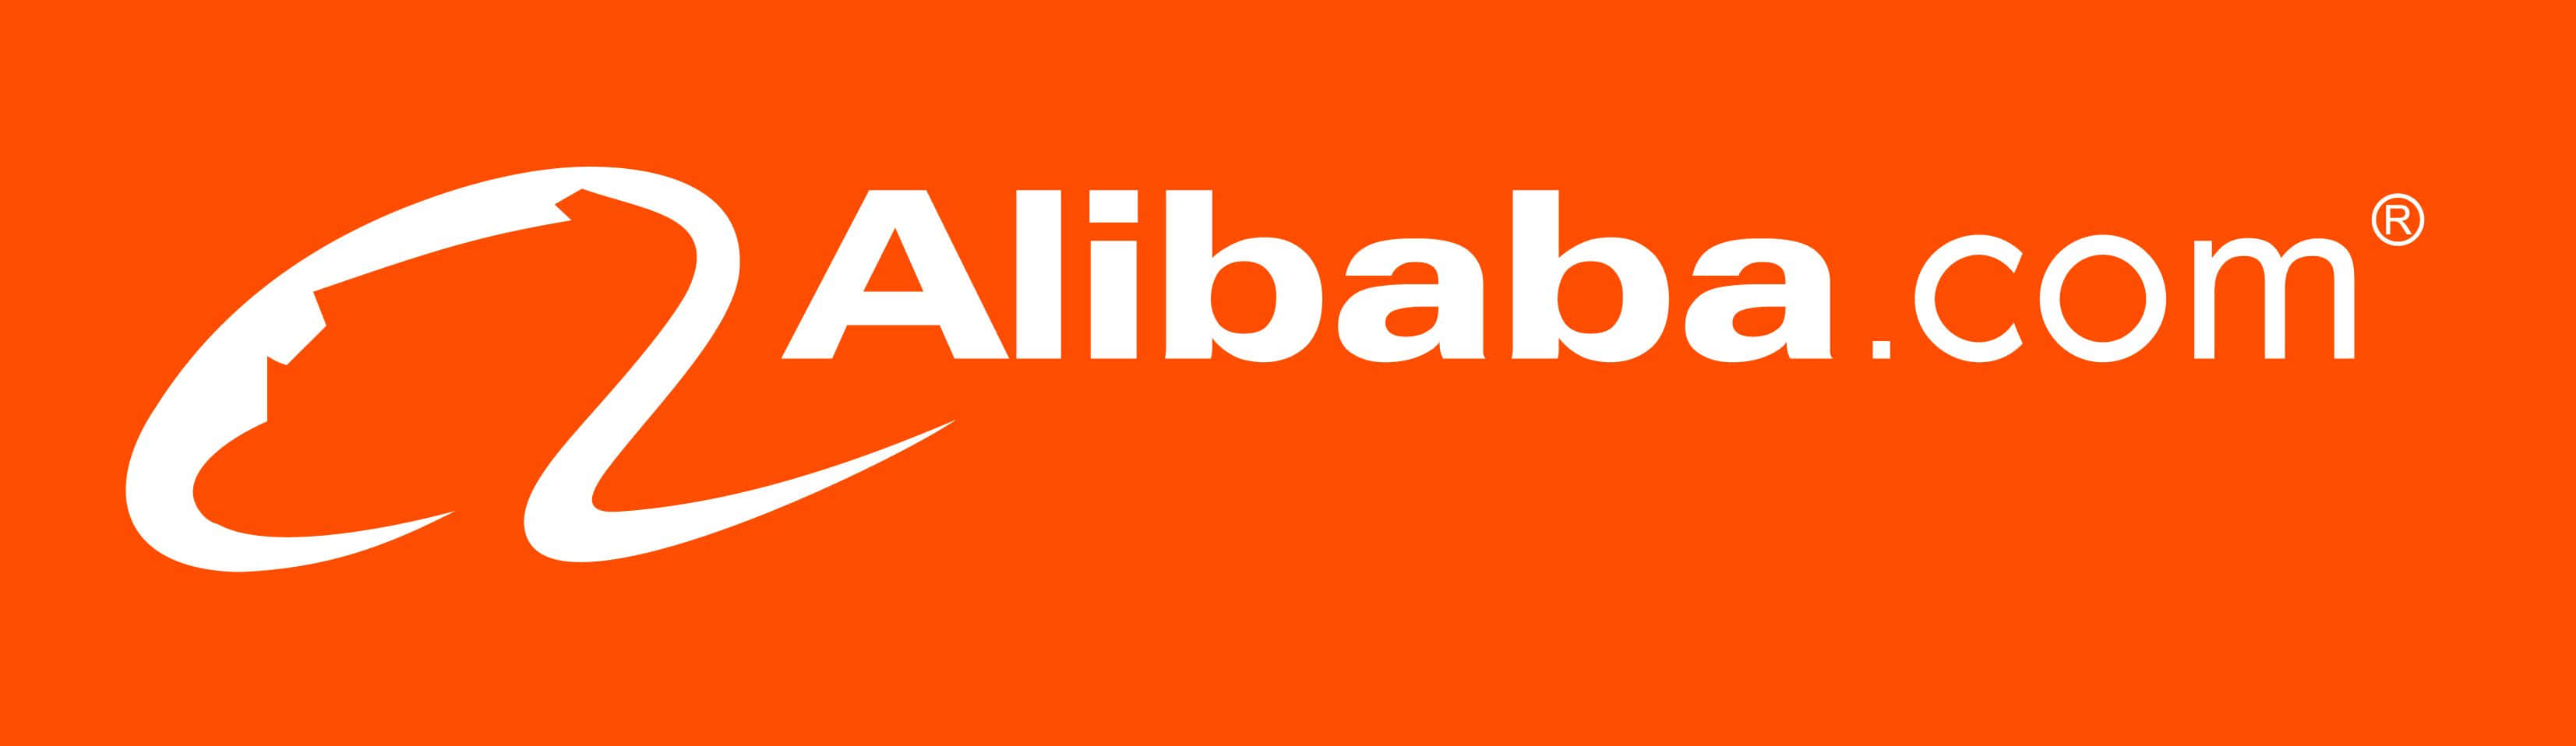 Alibaba Com Logo On An Orange Background